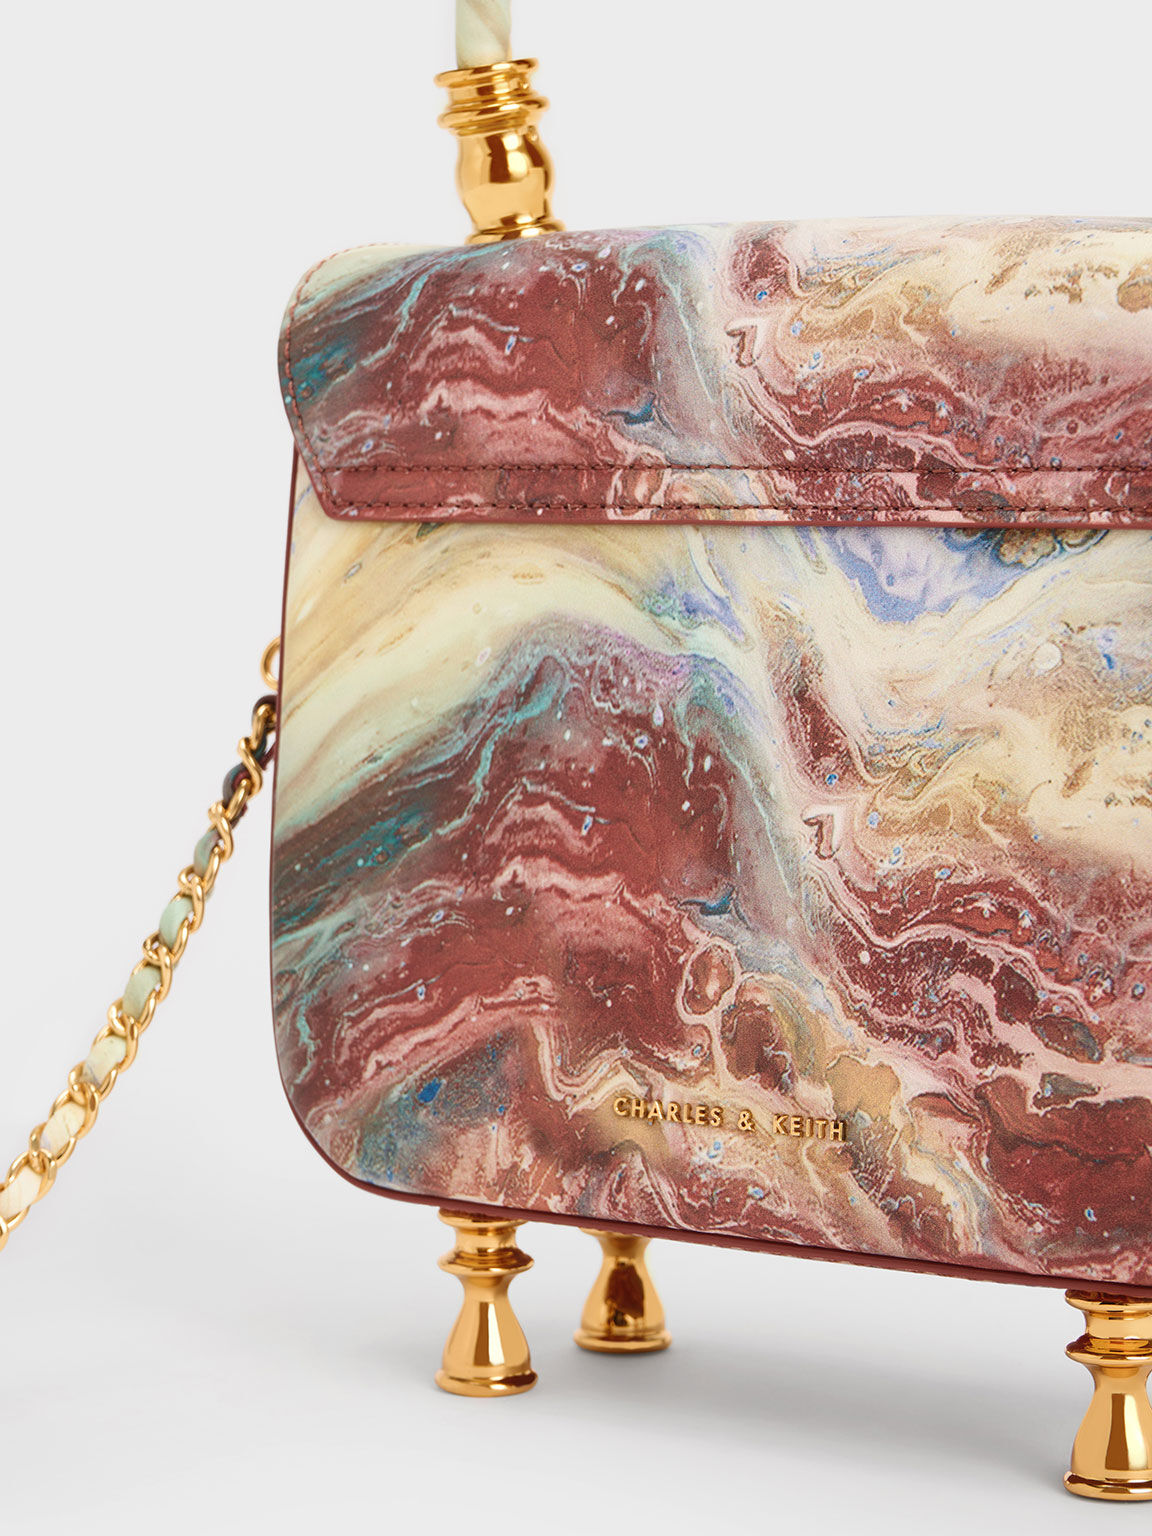 Meriah Swirl-Print Top Handle Bag, Multi, hi-res